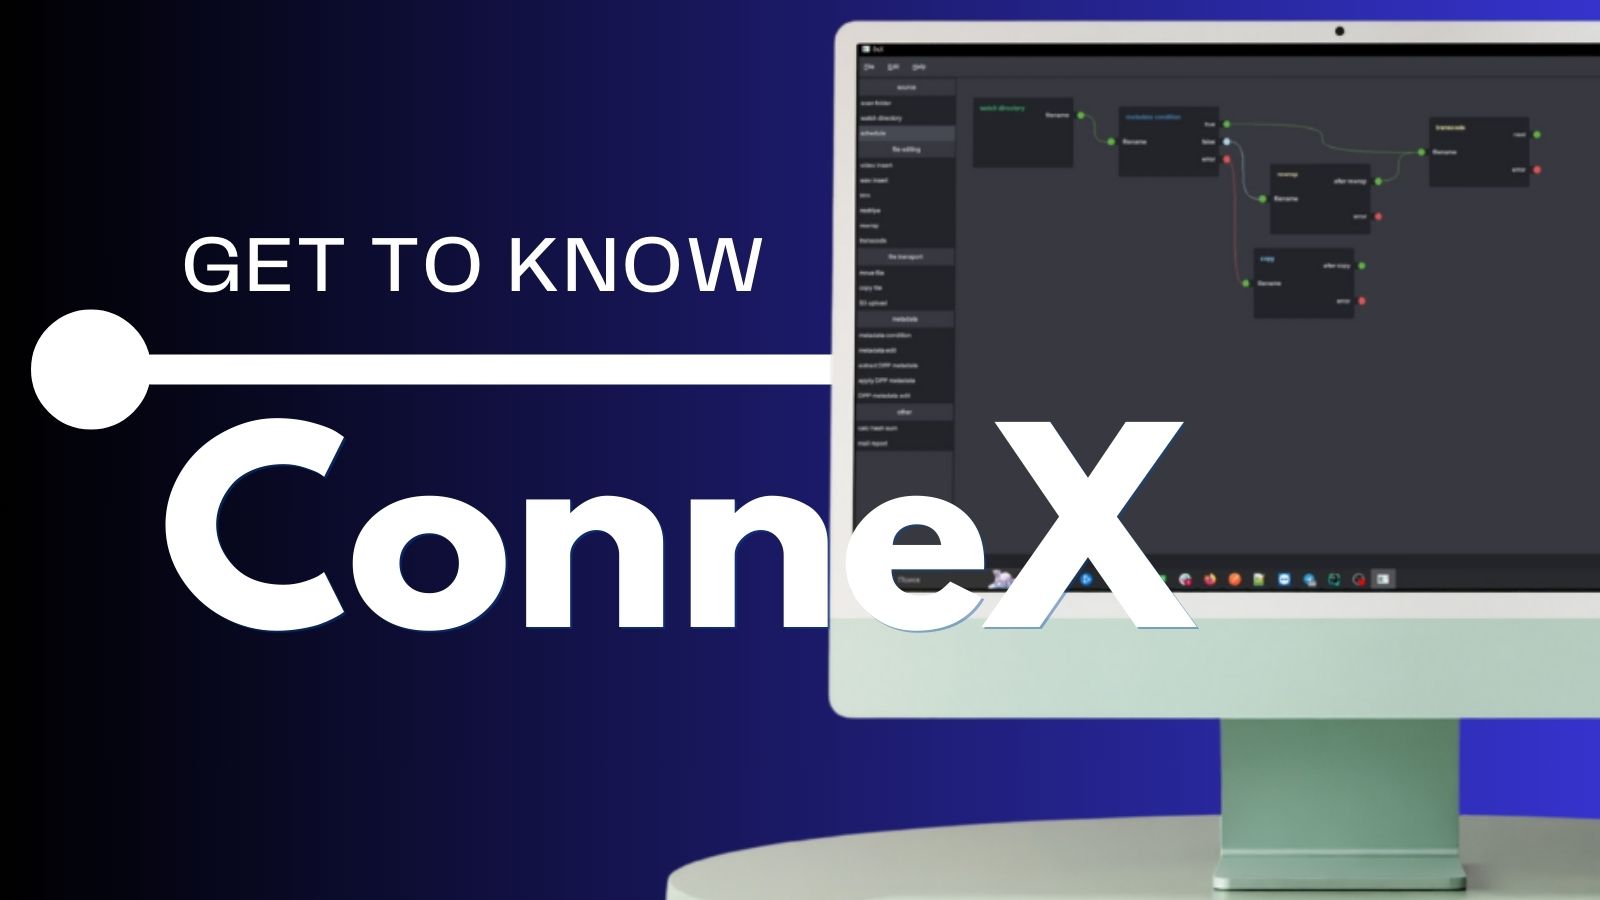 您正在查看与诺亚一起了解 ConneX